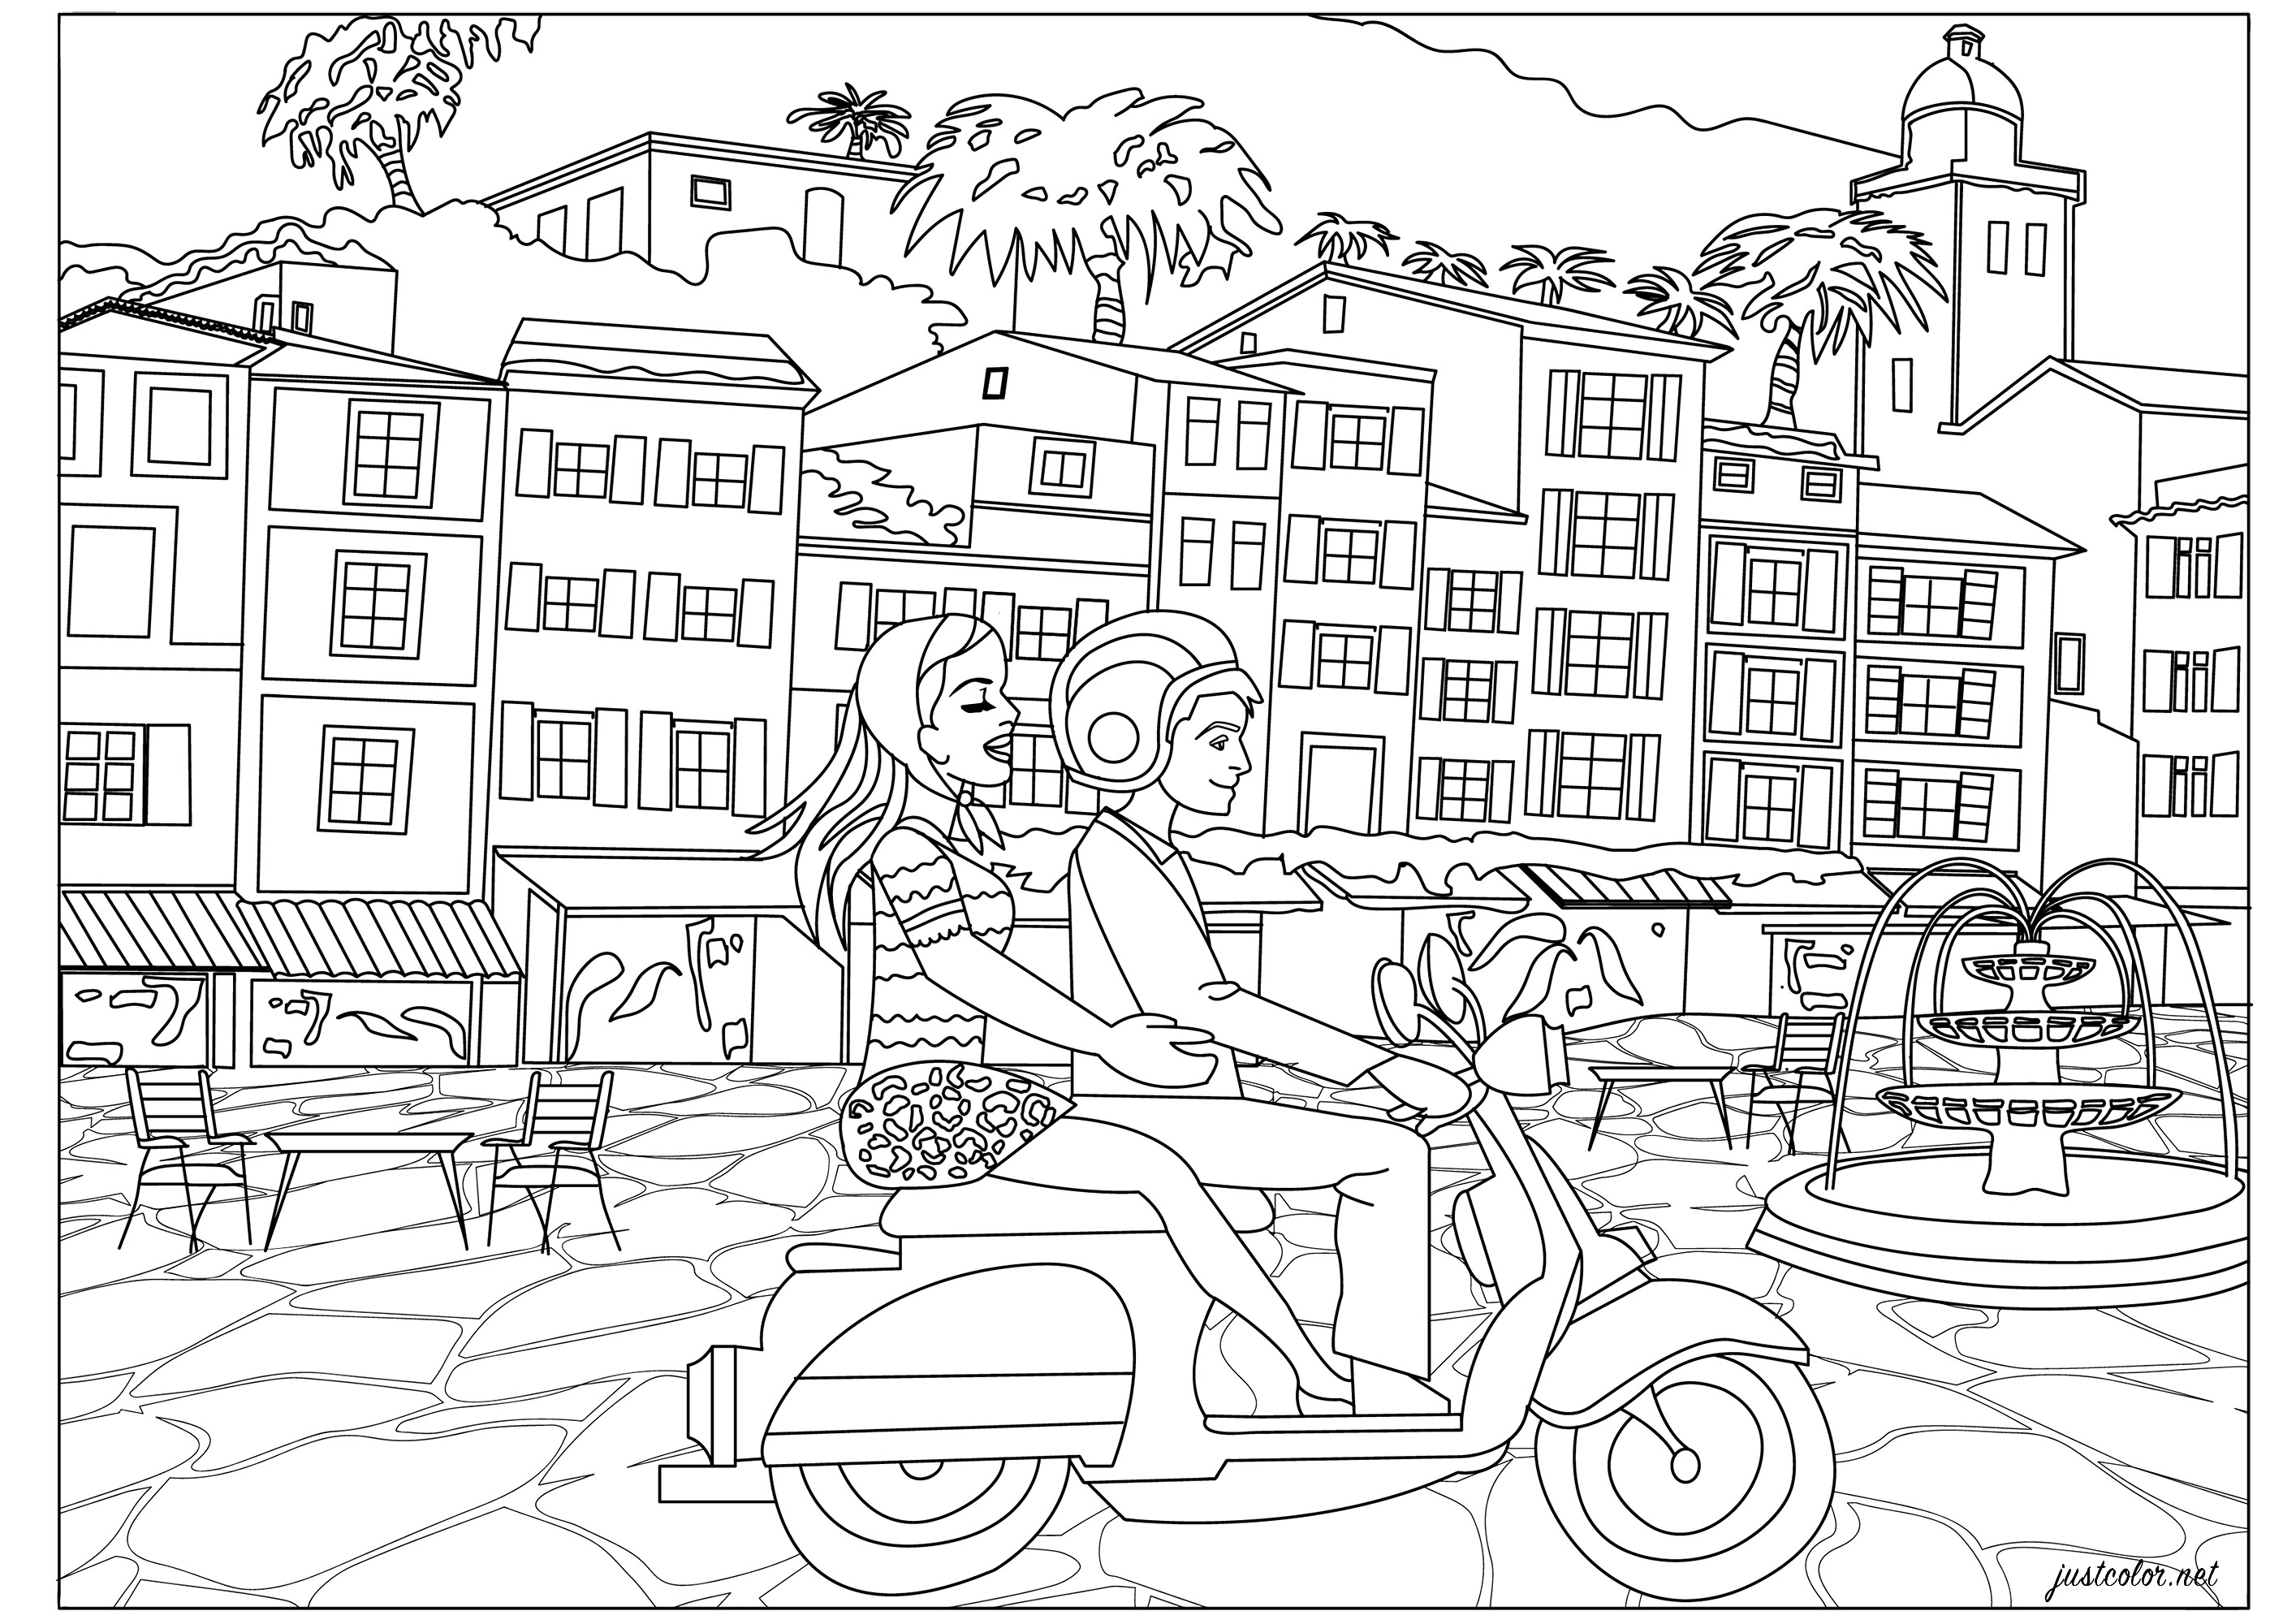 Vacaciones a la italiana para esta joven pareja en su vespa scooter. Pasee por la costa a través de bonitos pueblos... ¡Colorea estas típicas casas italianas, la fuente de la plaza, el patinete y recrea el ambiente de la 'dolce vita'!